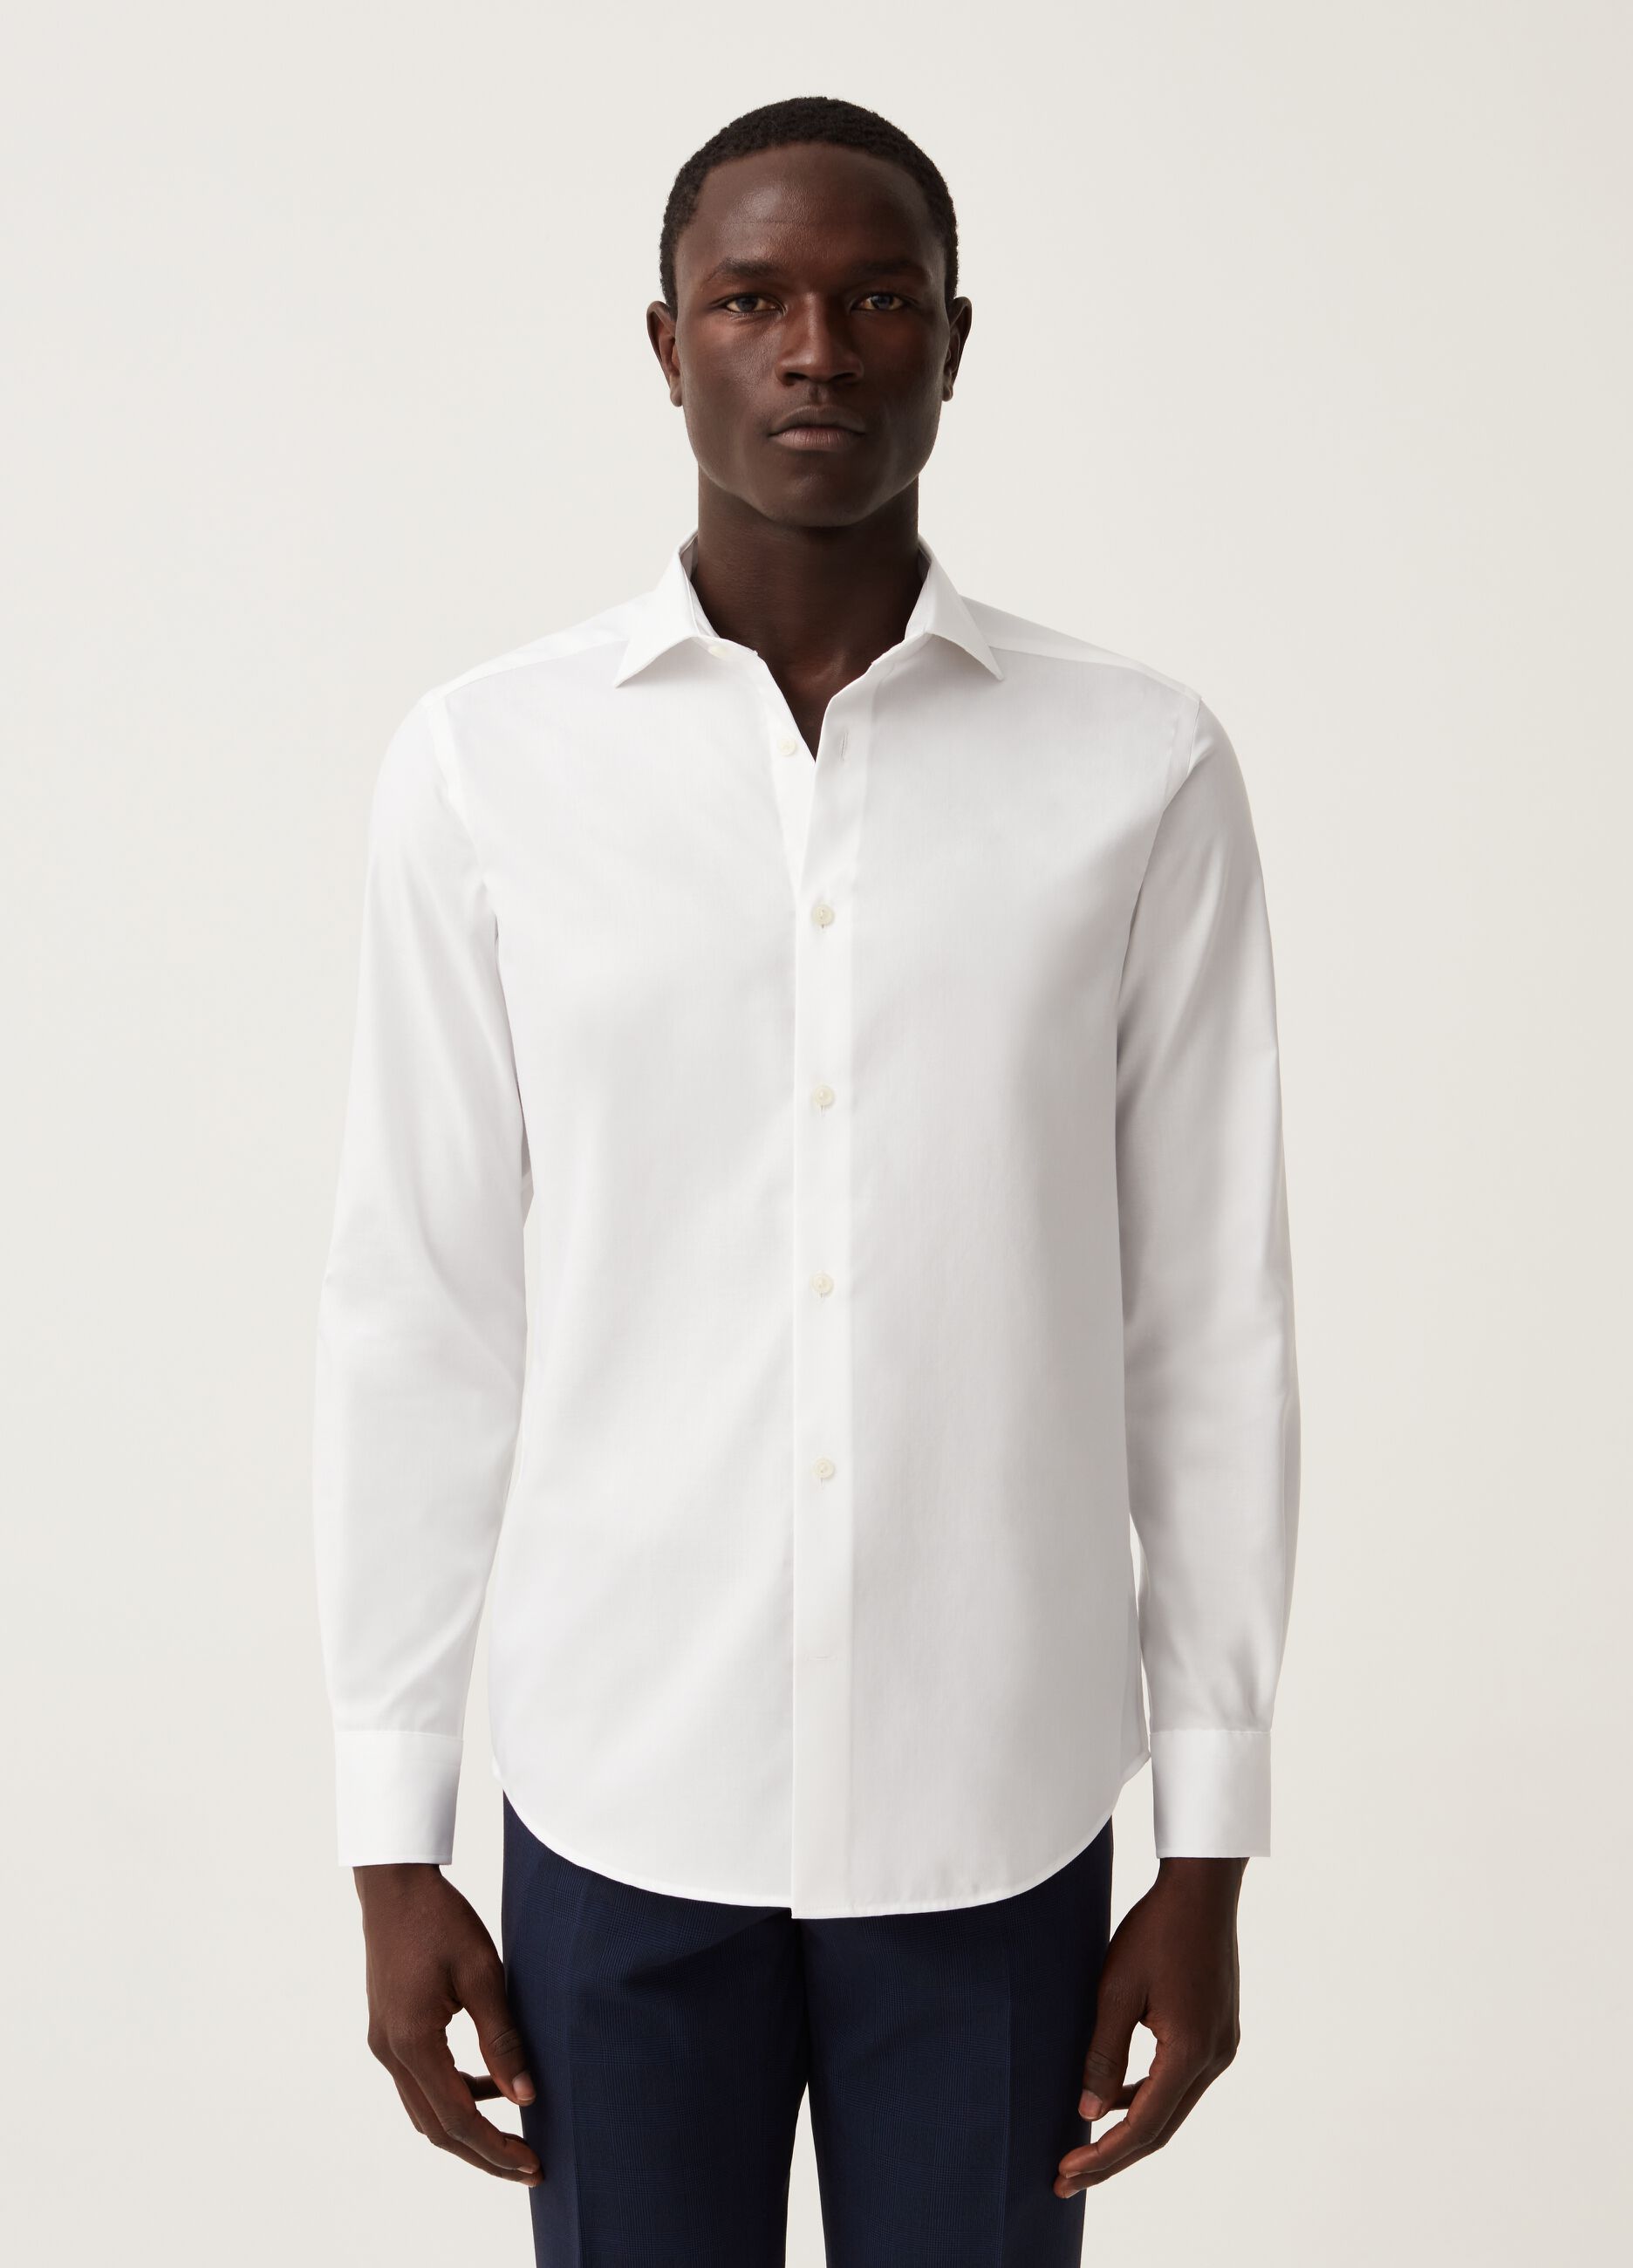 Camisa slim fit de algodón sin plancha en color liso.